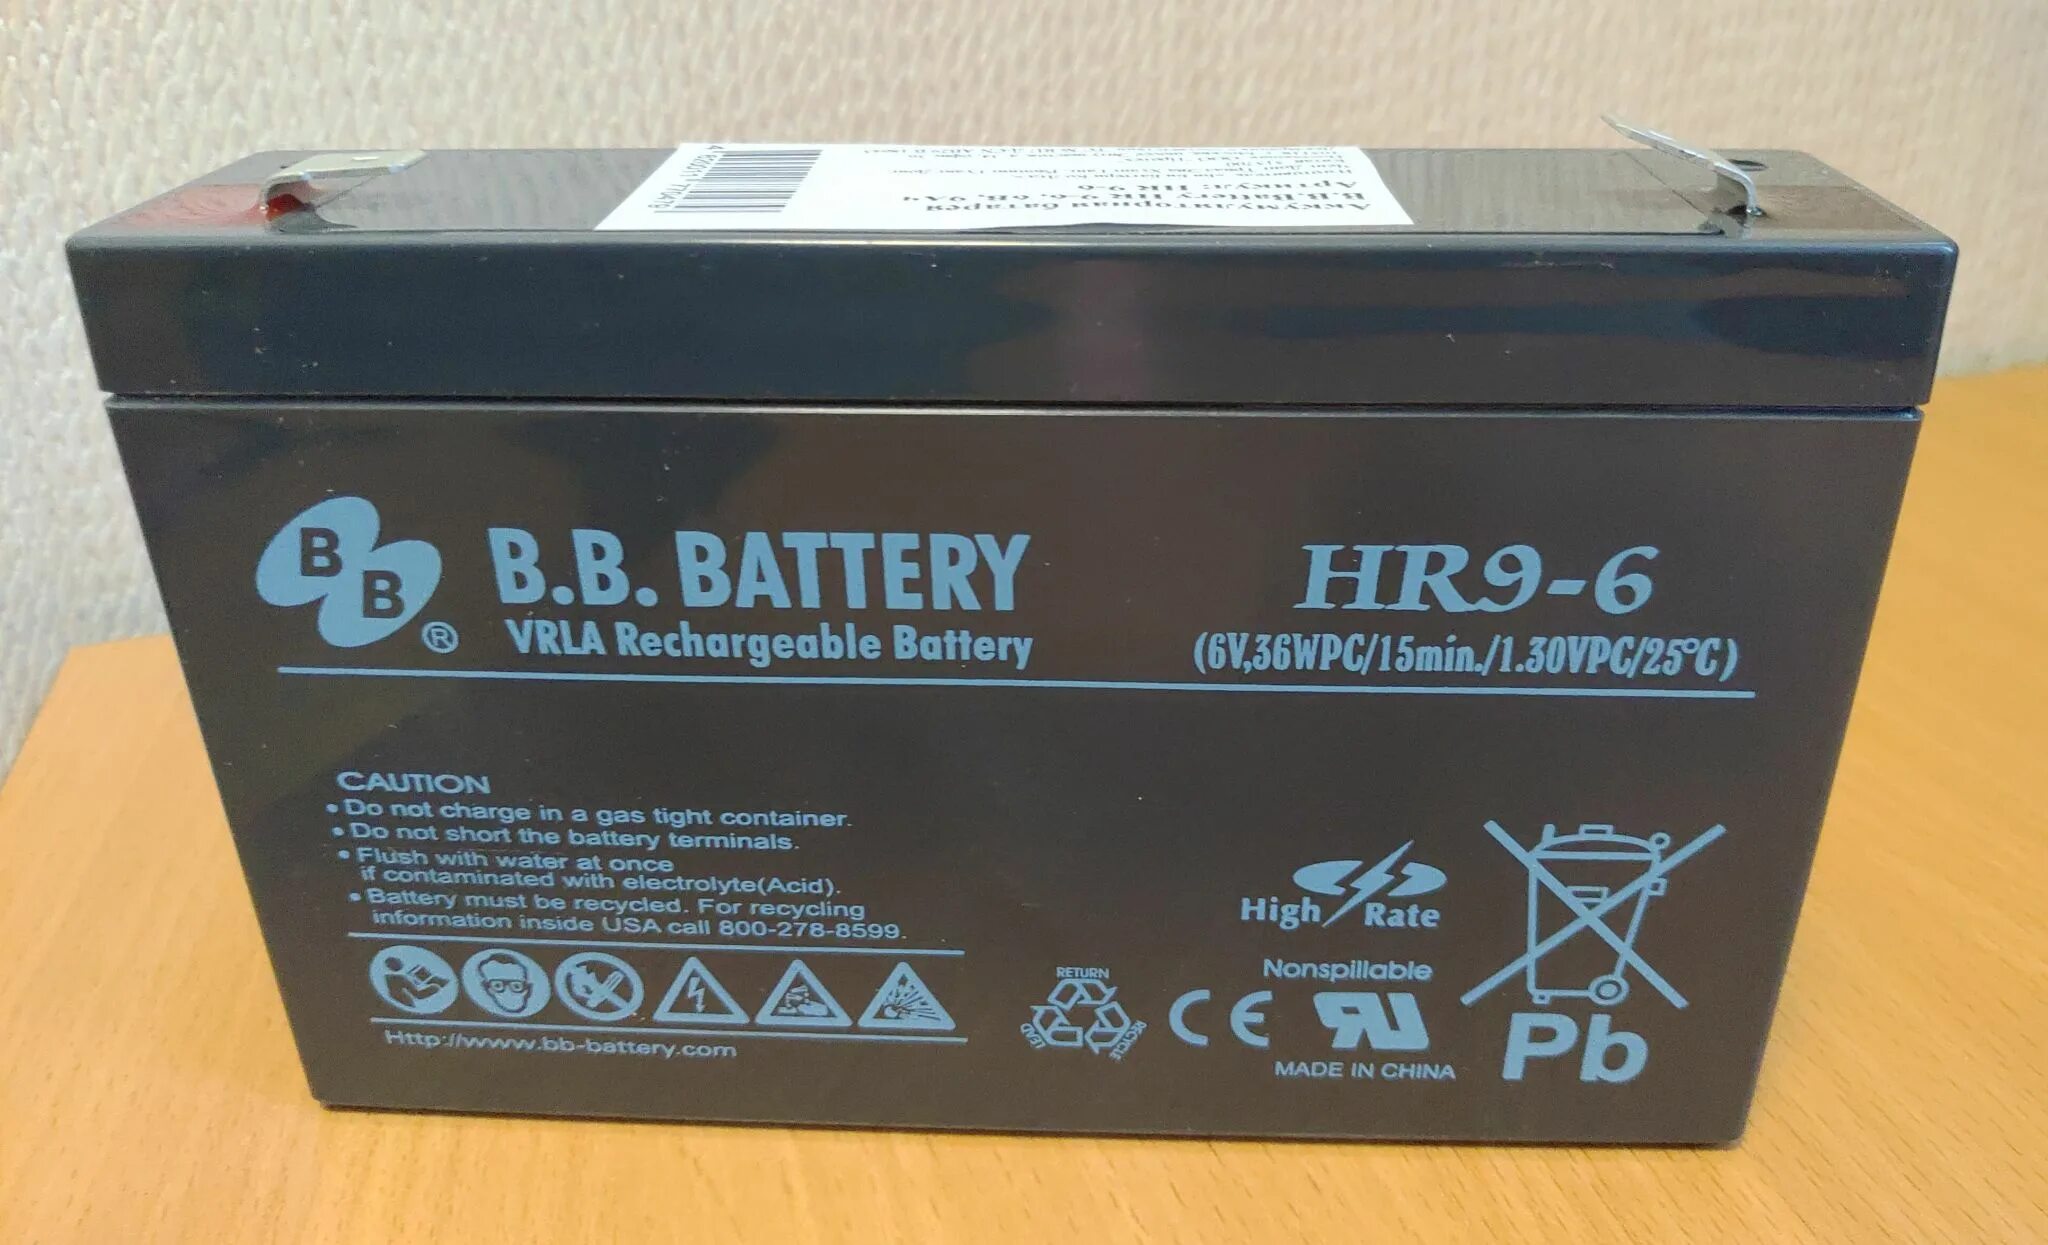 B b battery 12 12. Батарея для ИБП BB HR 9-6 6в 9ач. Батарея b.b. Battery hr9-6. Аккумуляторная батарея b. b. Battery HR 6-12. Аккумулятор b.b.Battery HR 9-6.